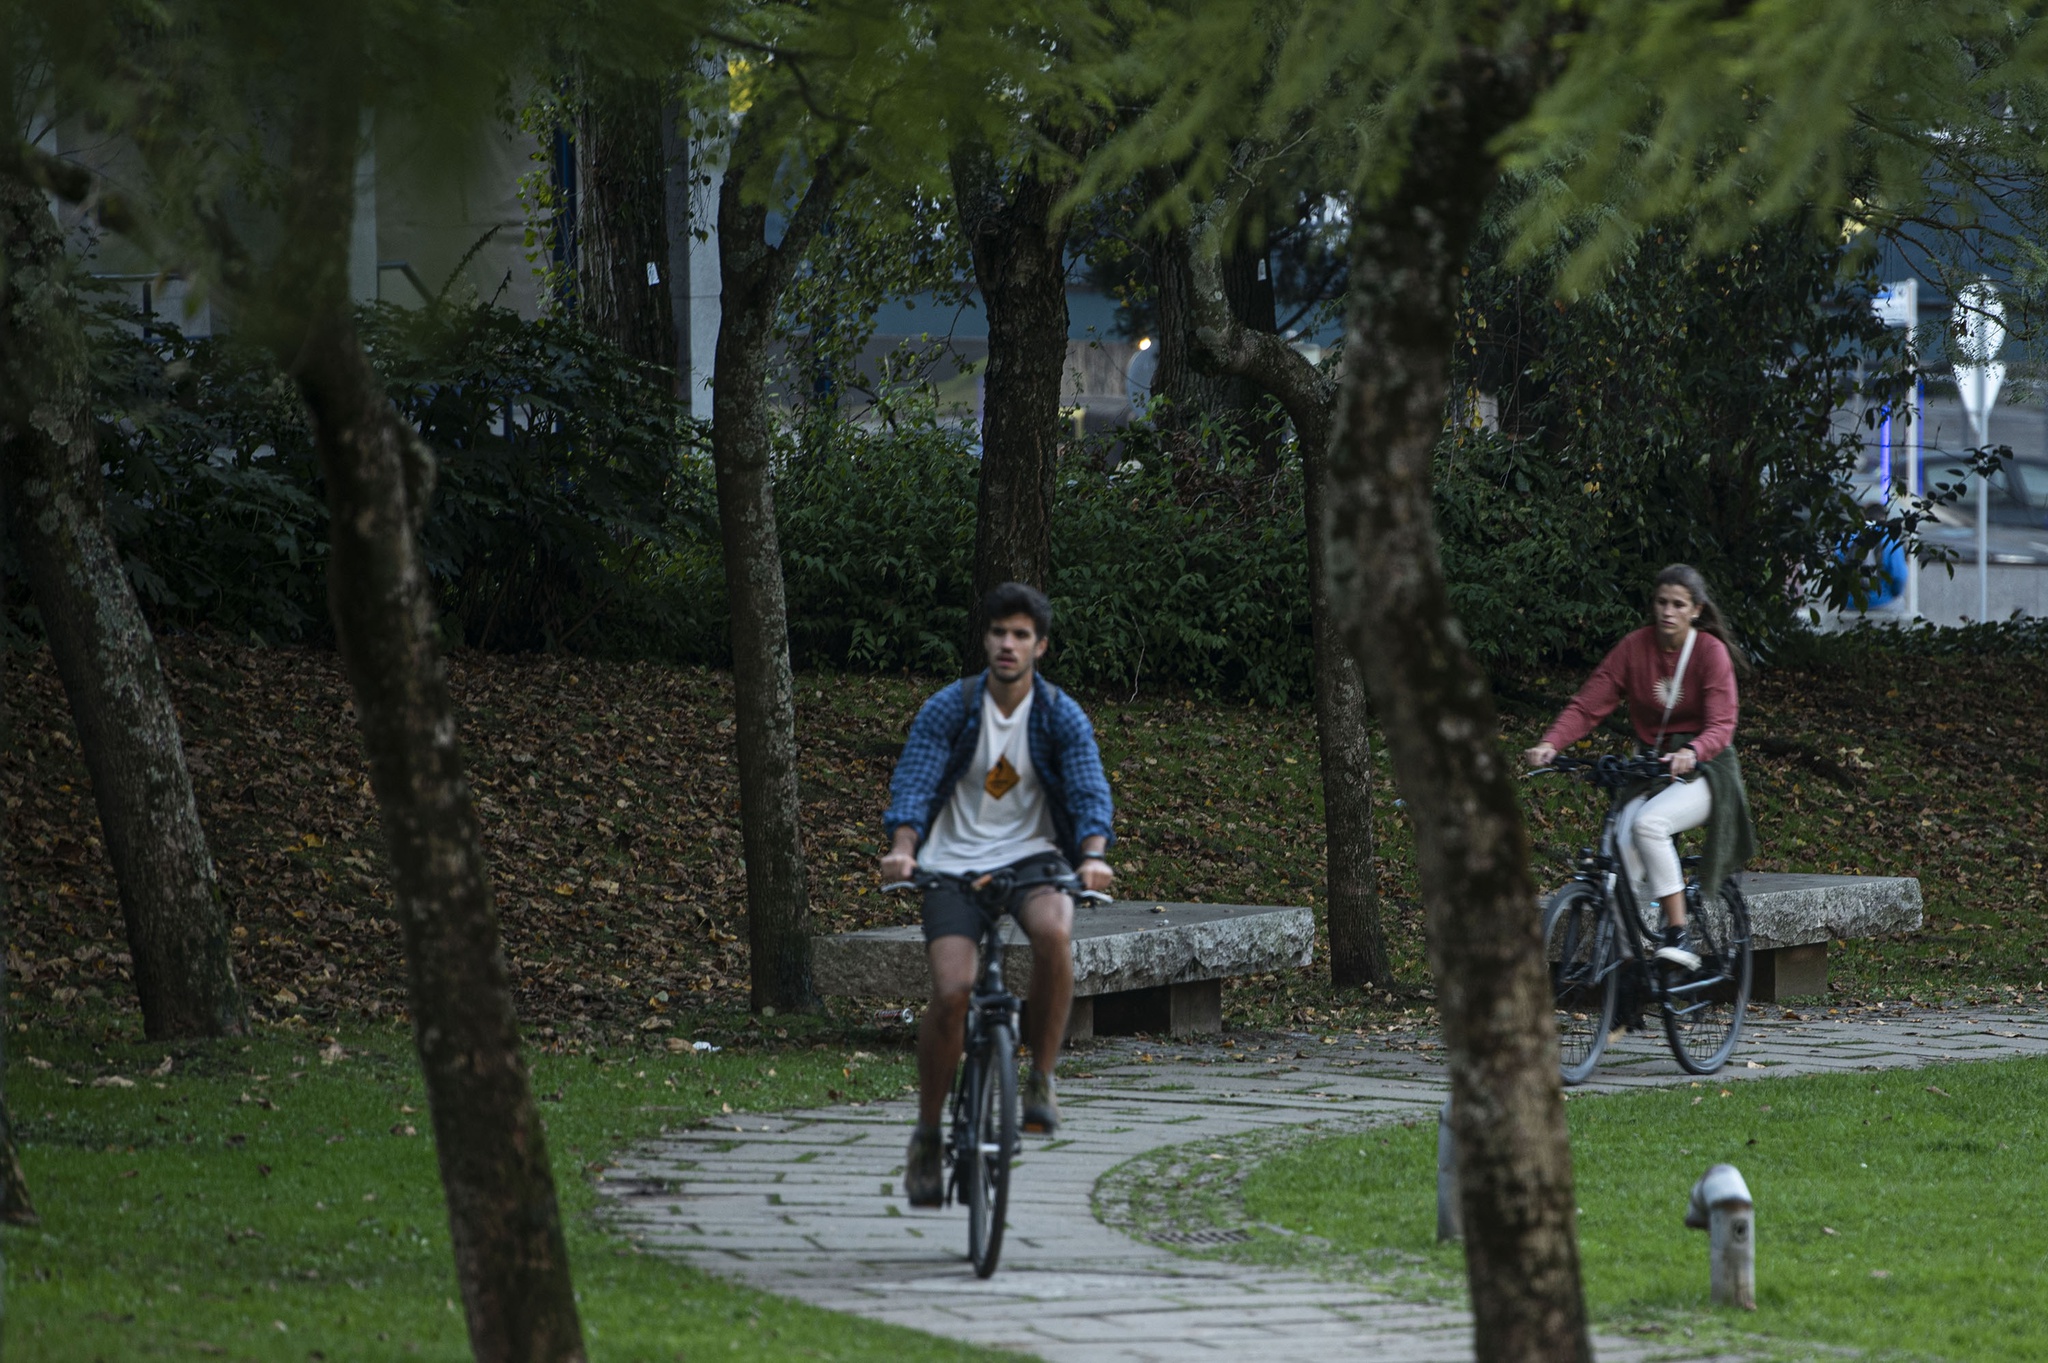 L’Université de Coimbra lance un diplôme en gestion urbaine durable |  Alentours